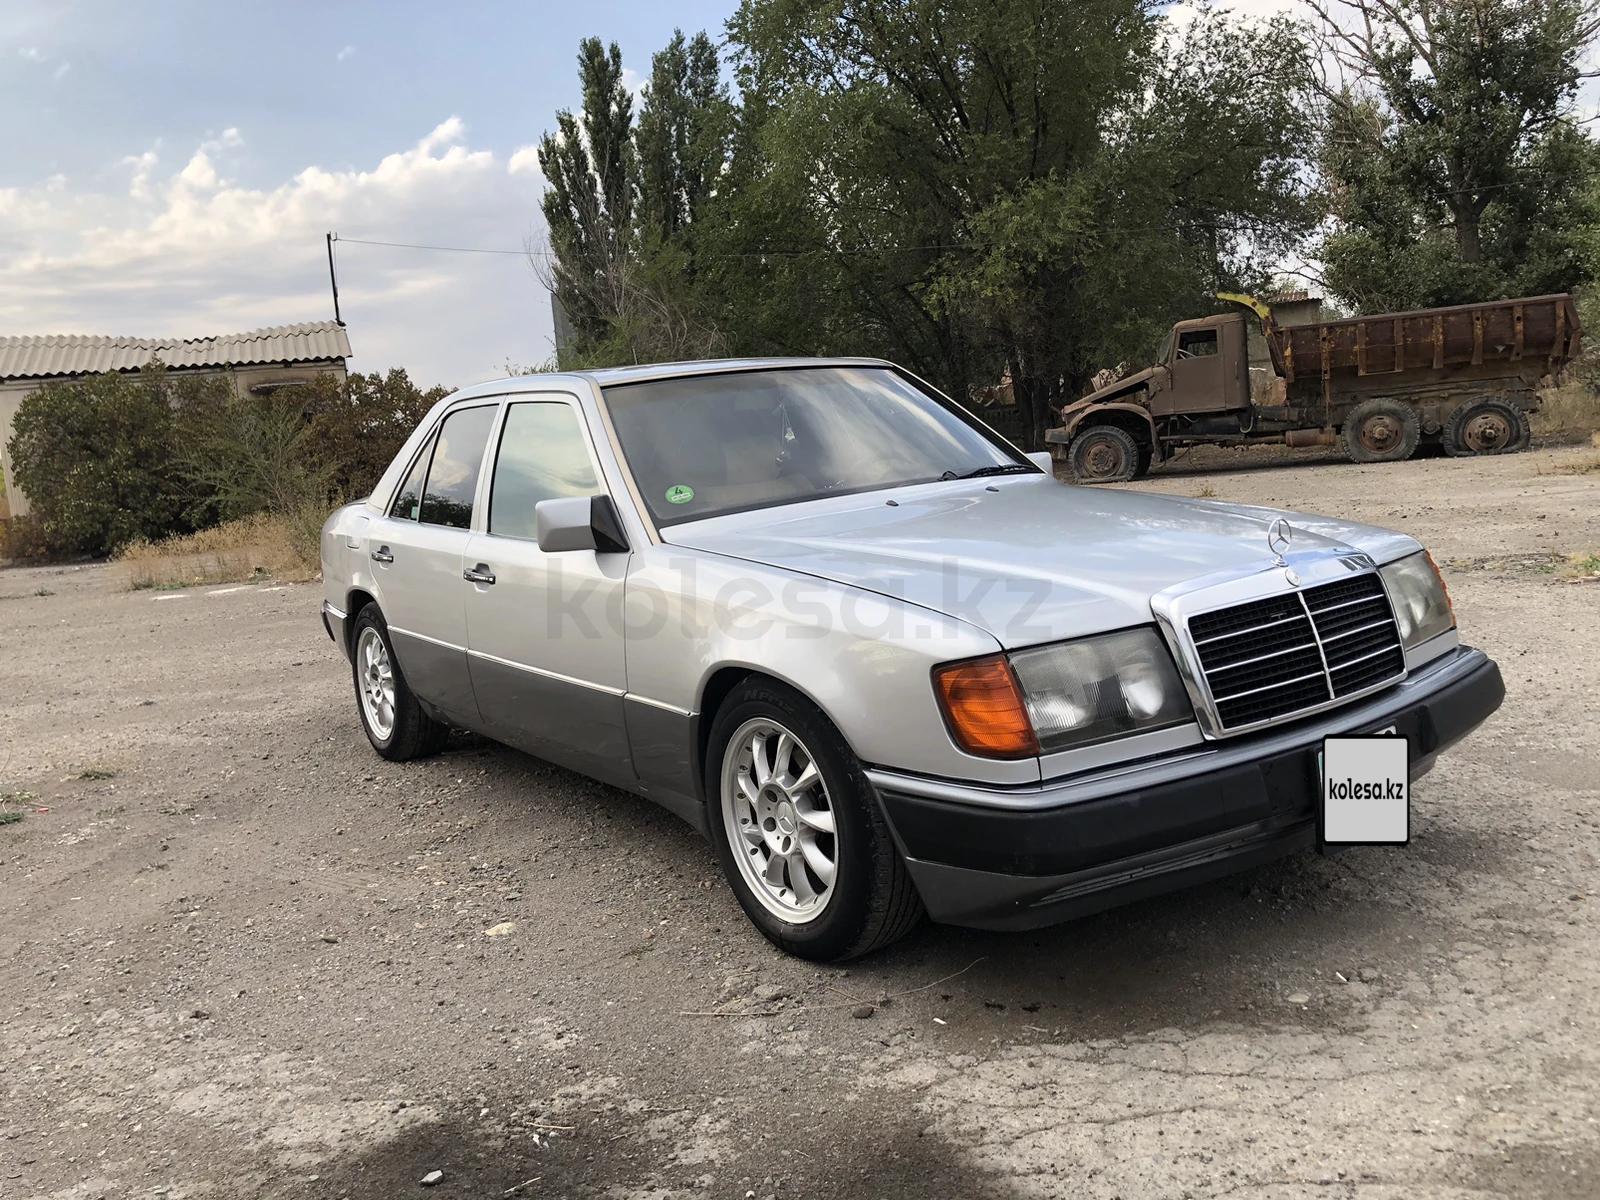 Mercedes-Benz E 230 1992 г.